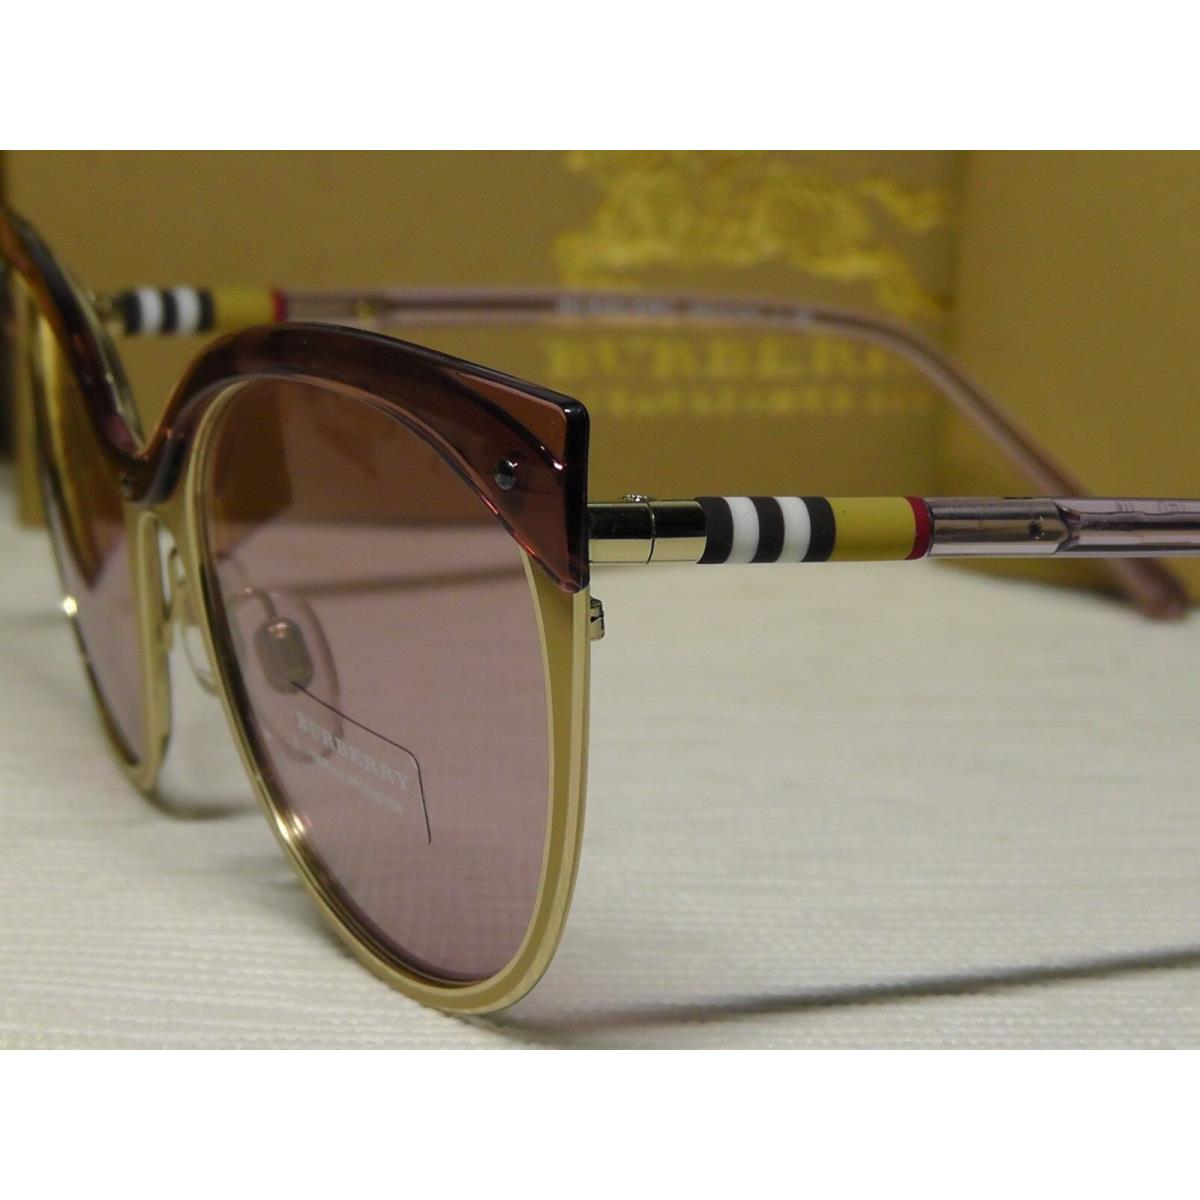 Burberry sunglasses  - Beige/Brushed/ Gold-tone Frame, Light Pink Lens 2